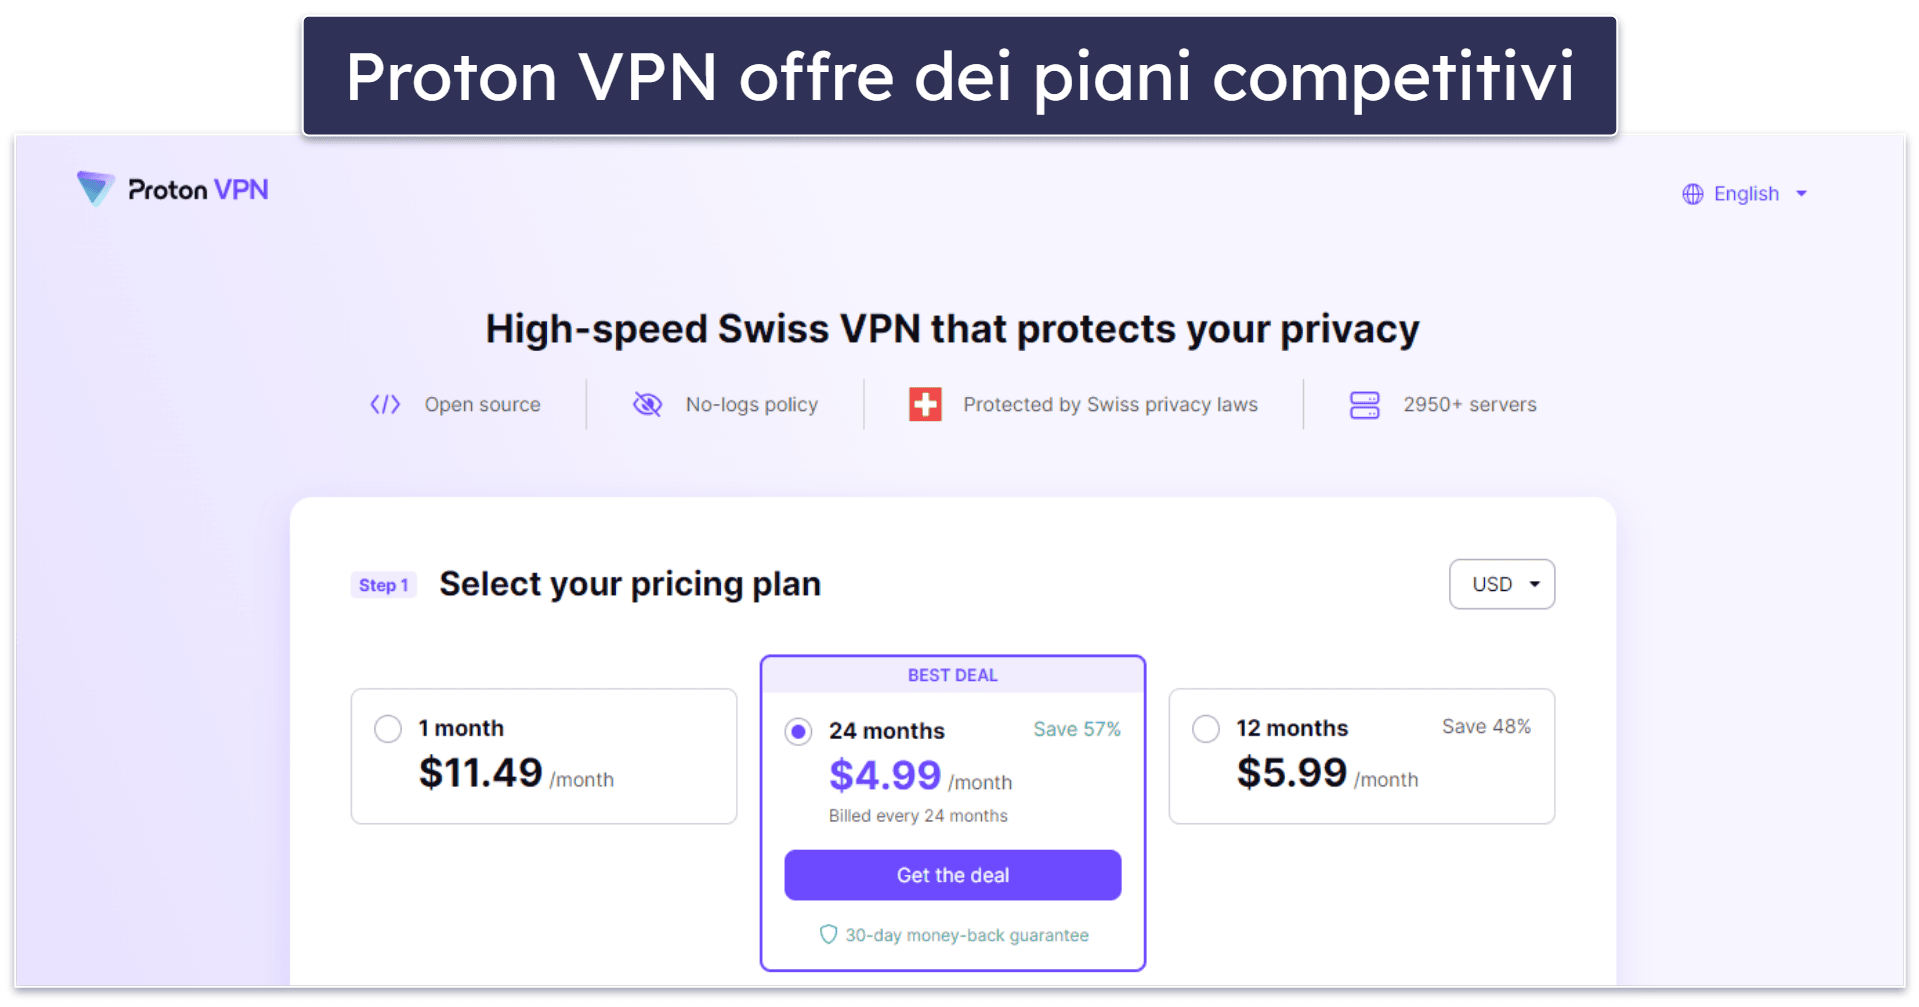 7. Proton VPN — Funzioni di sicurezza e privacy di prim’ordine